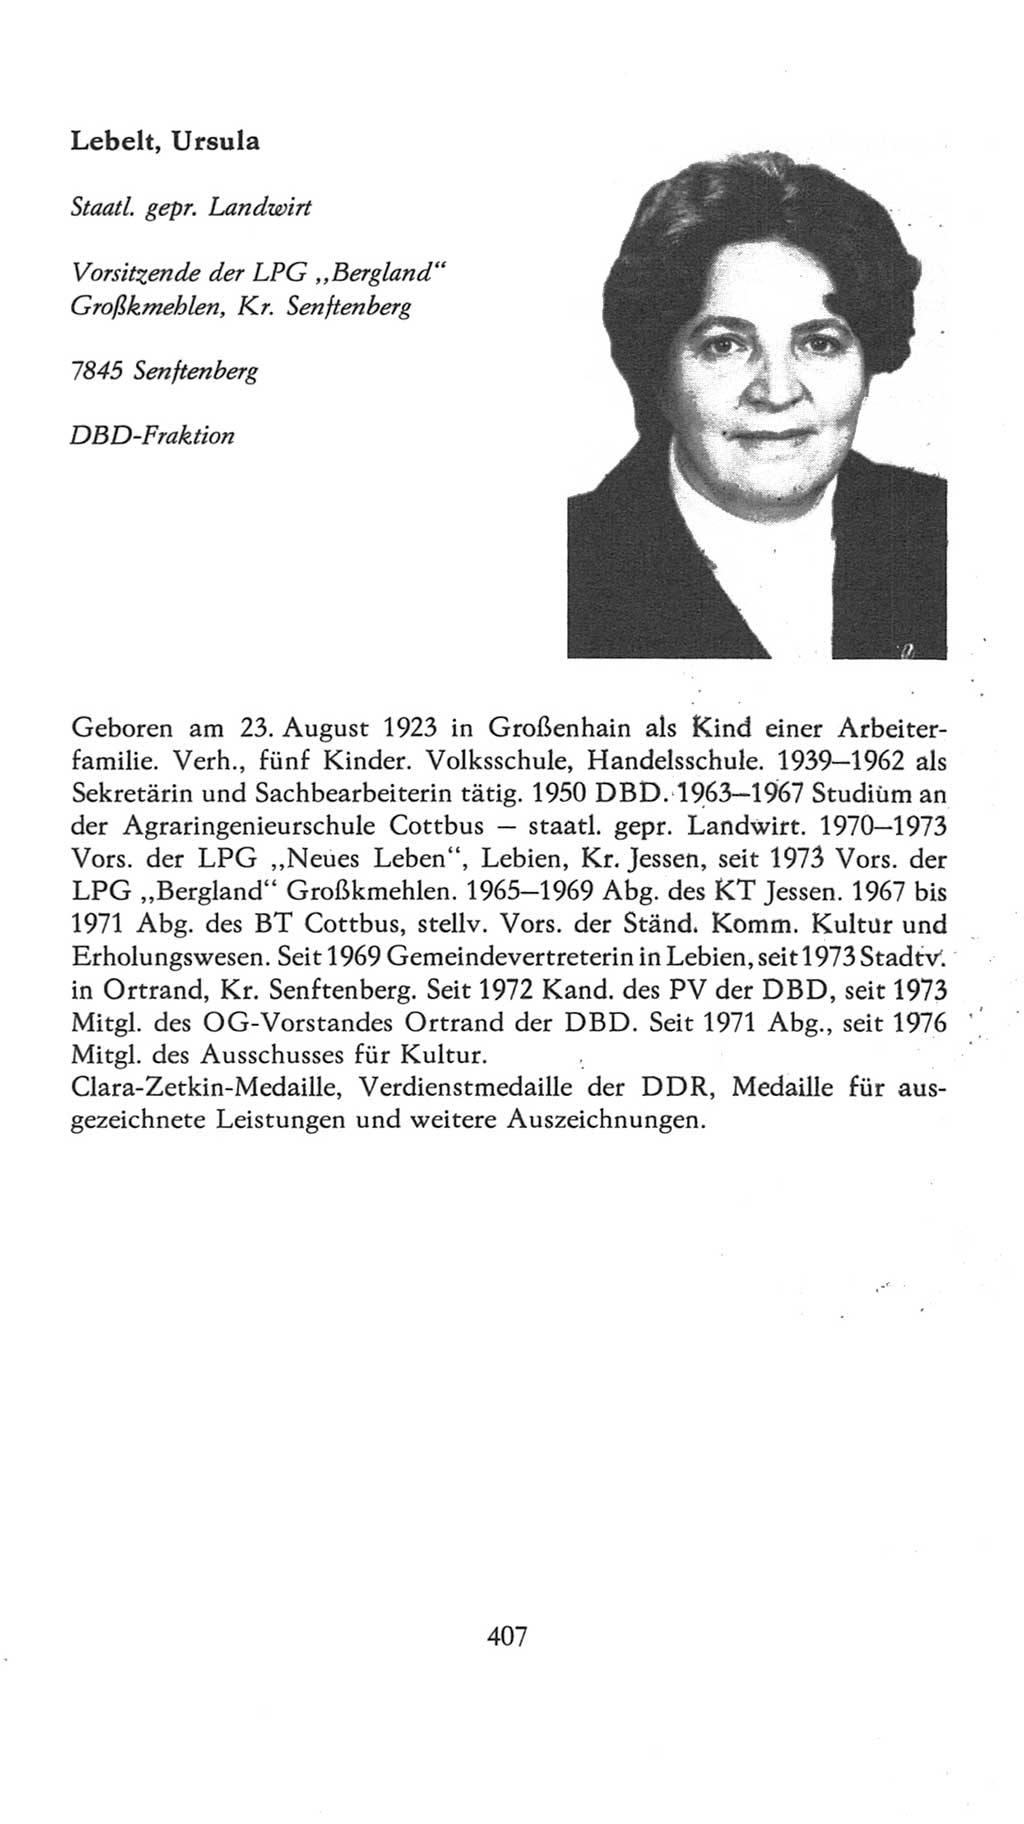 Volkskammer (VK) der Deutschen Demokratischen Republik (DDR), 7. Wahlperiode 1976-1981, Seite 407 (VK. DDR 7. WP. 1976-1981, S. 407)